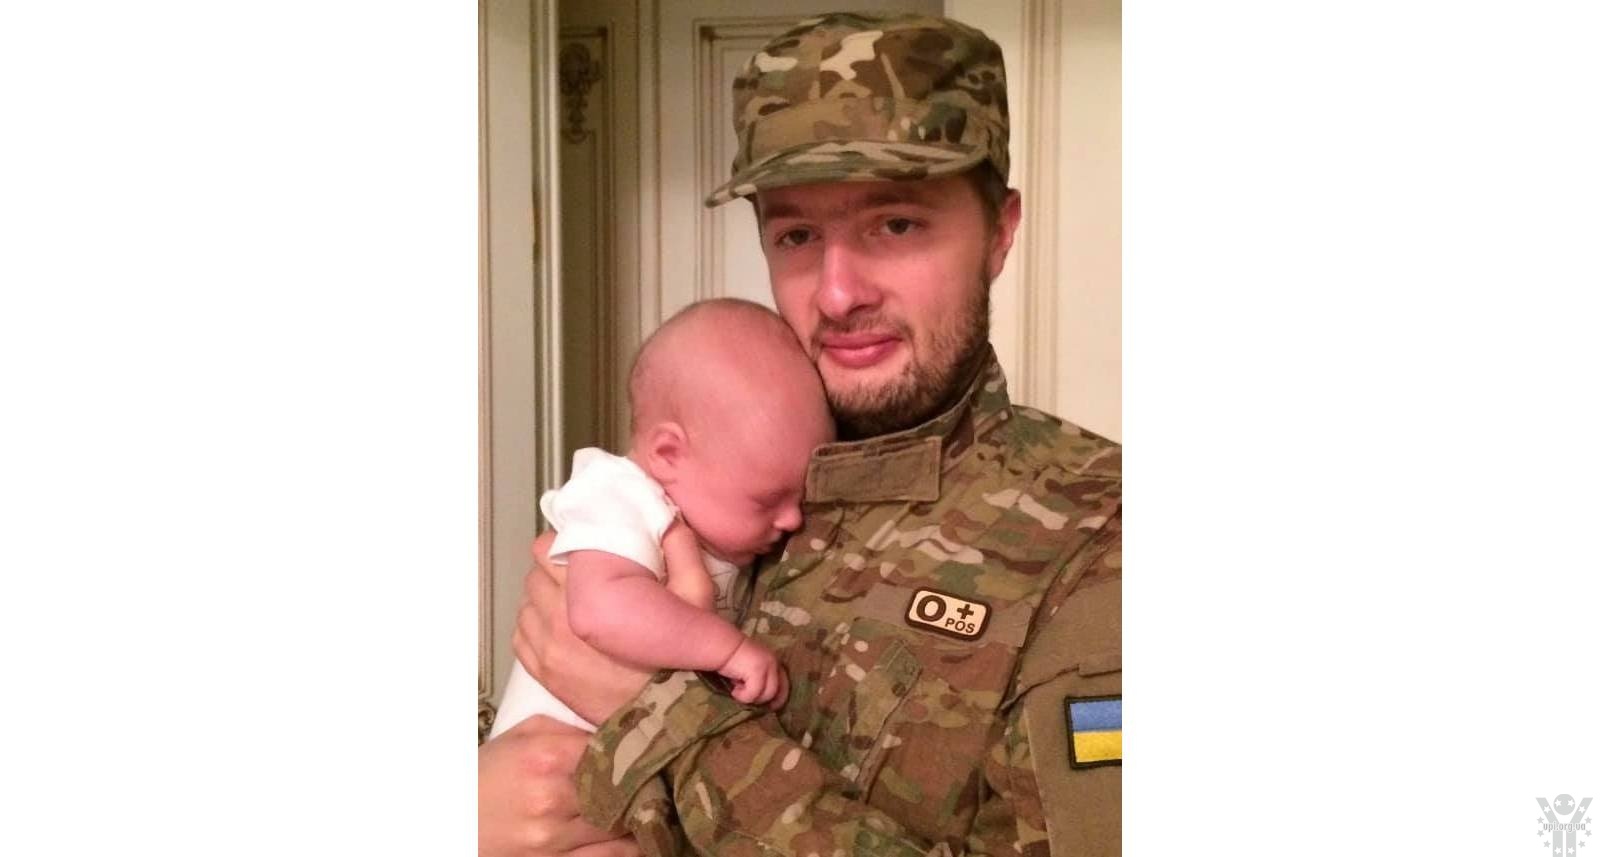 Син Порошенка таємно служив на Донбасі: розсекречені подробиці